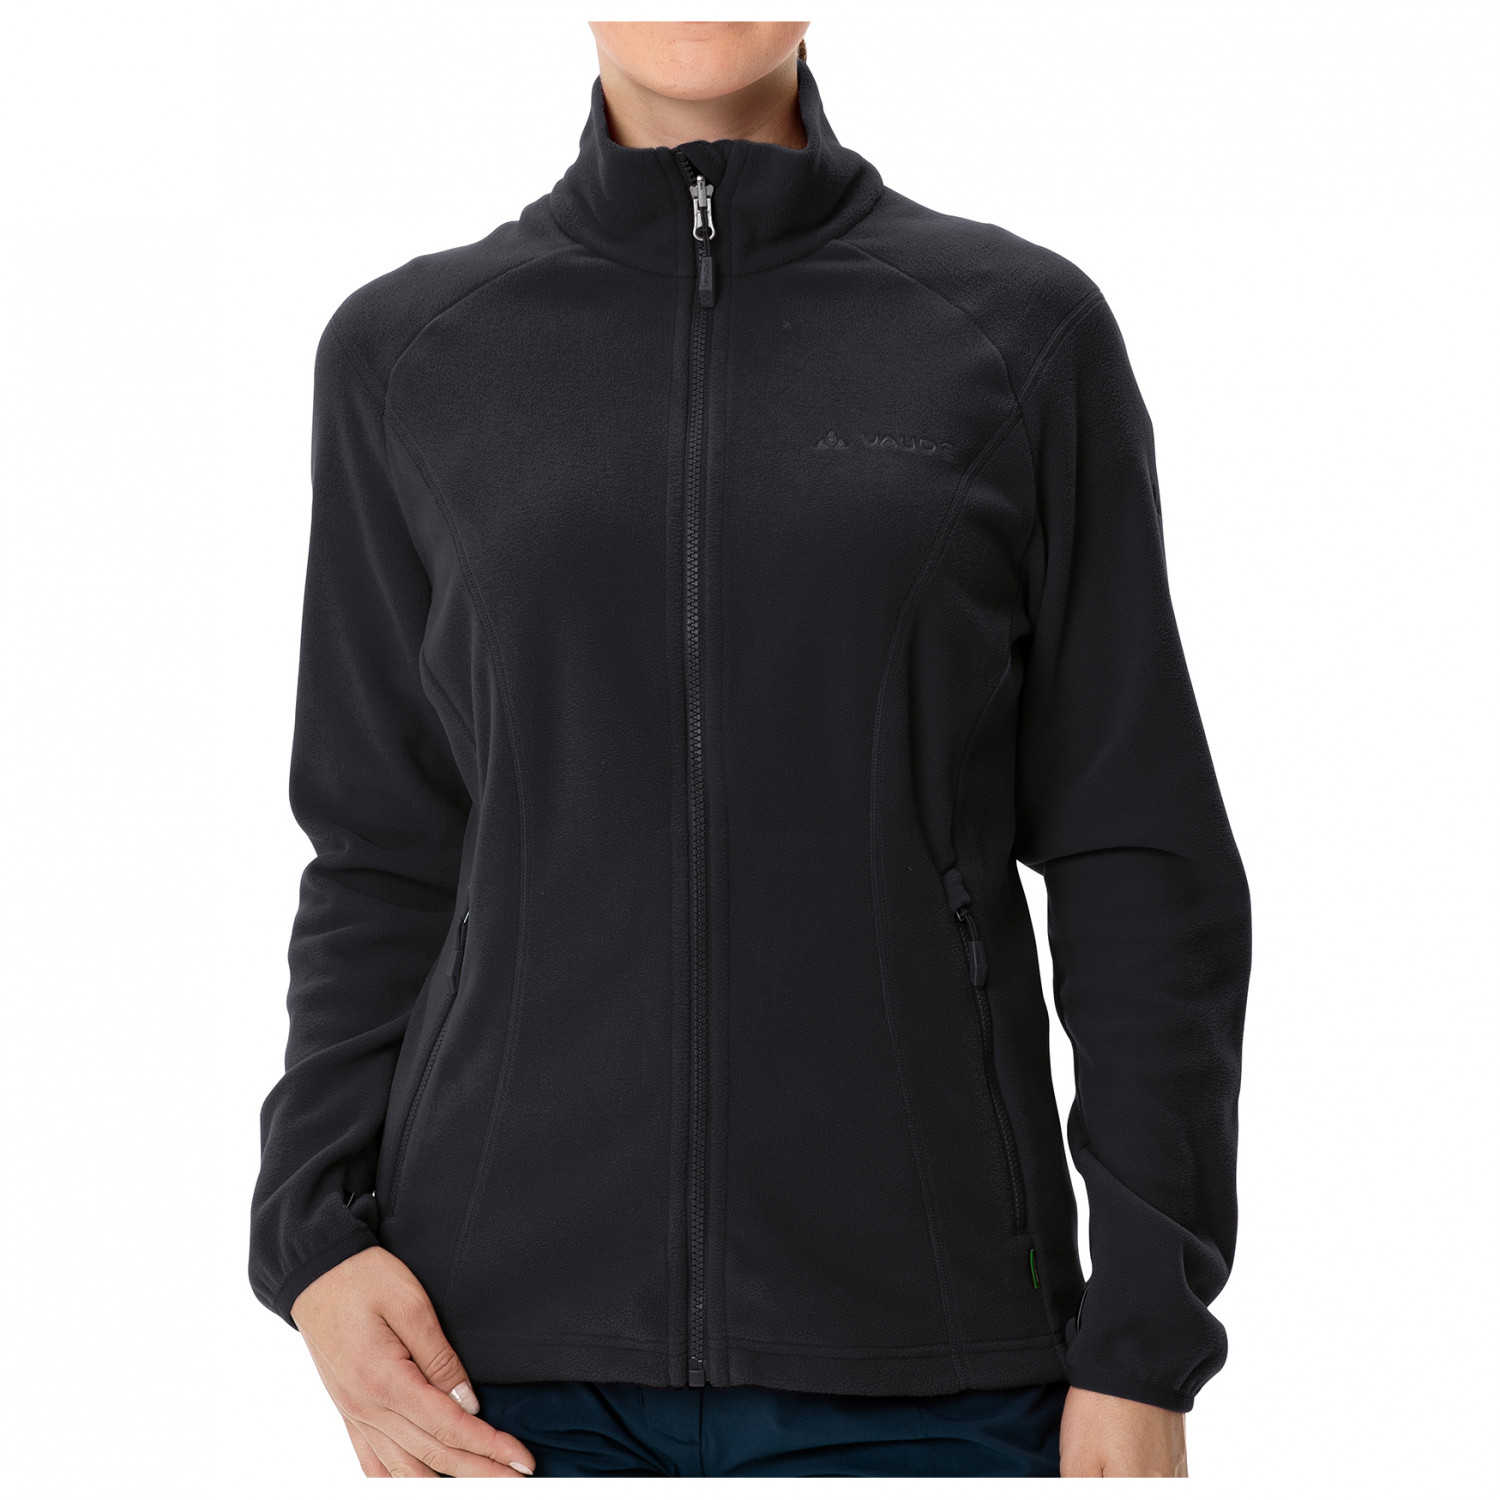 Флисовая жилетка Vaude Women's Rosemoor Fleece II, черный дождевик водоотталкивающая куртка mens rosemoor jacket vaude цвет black